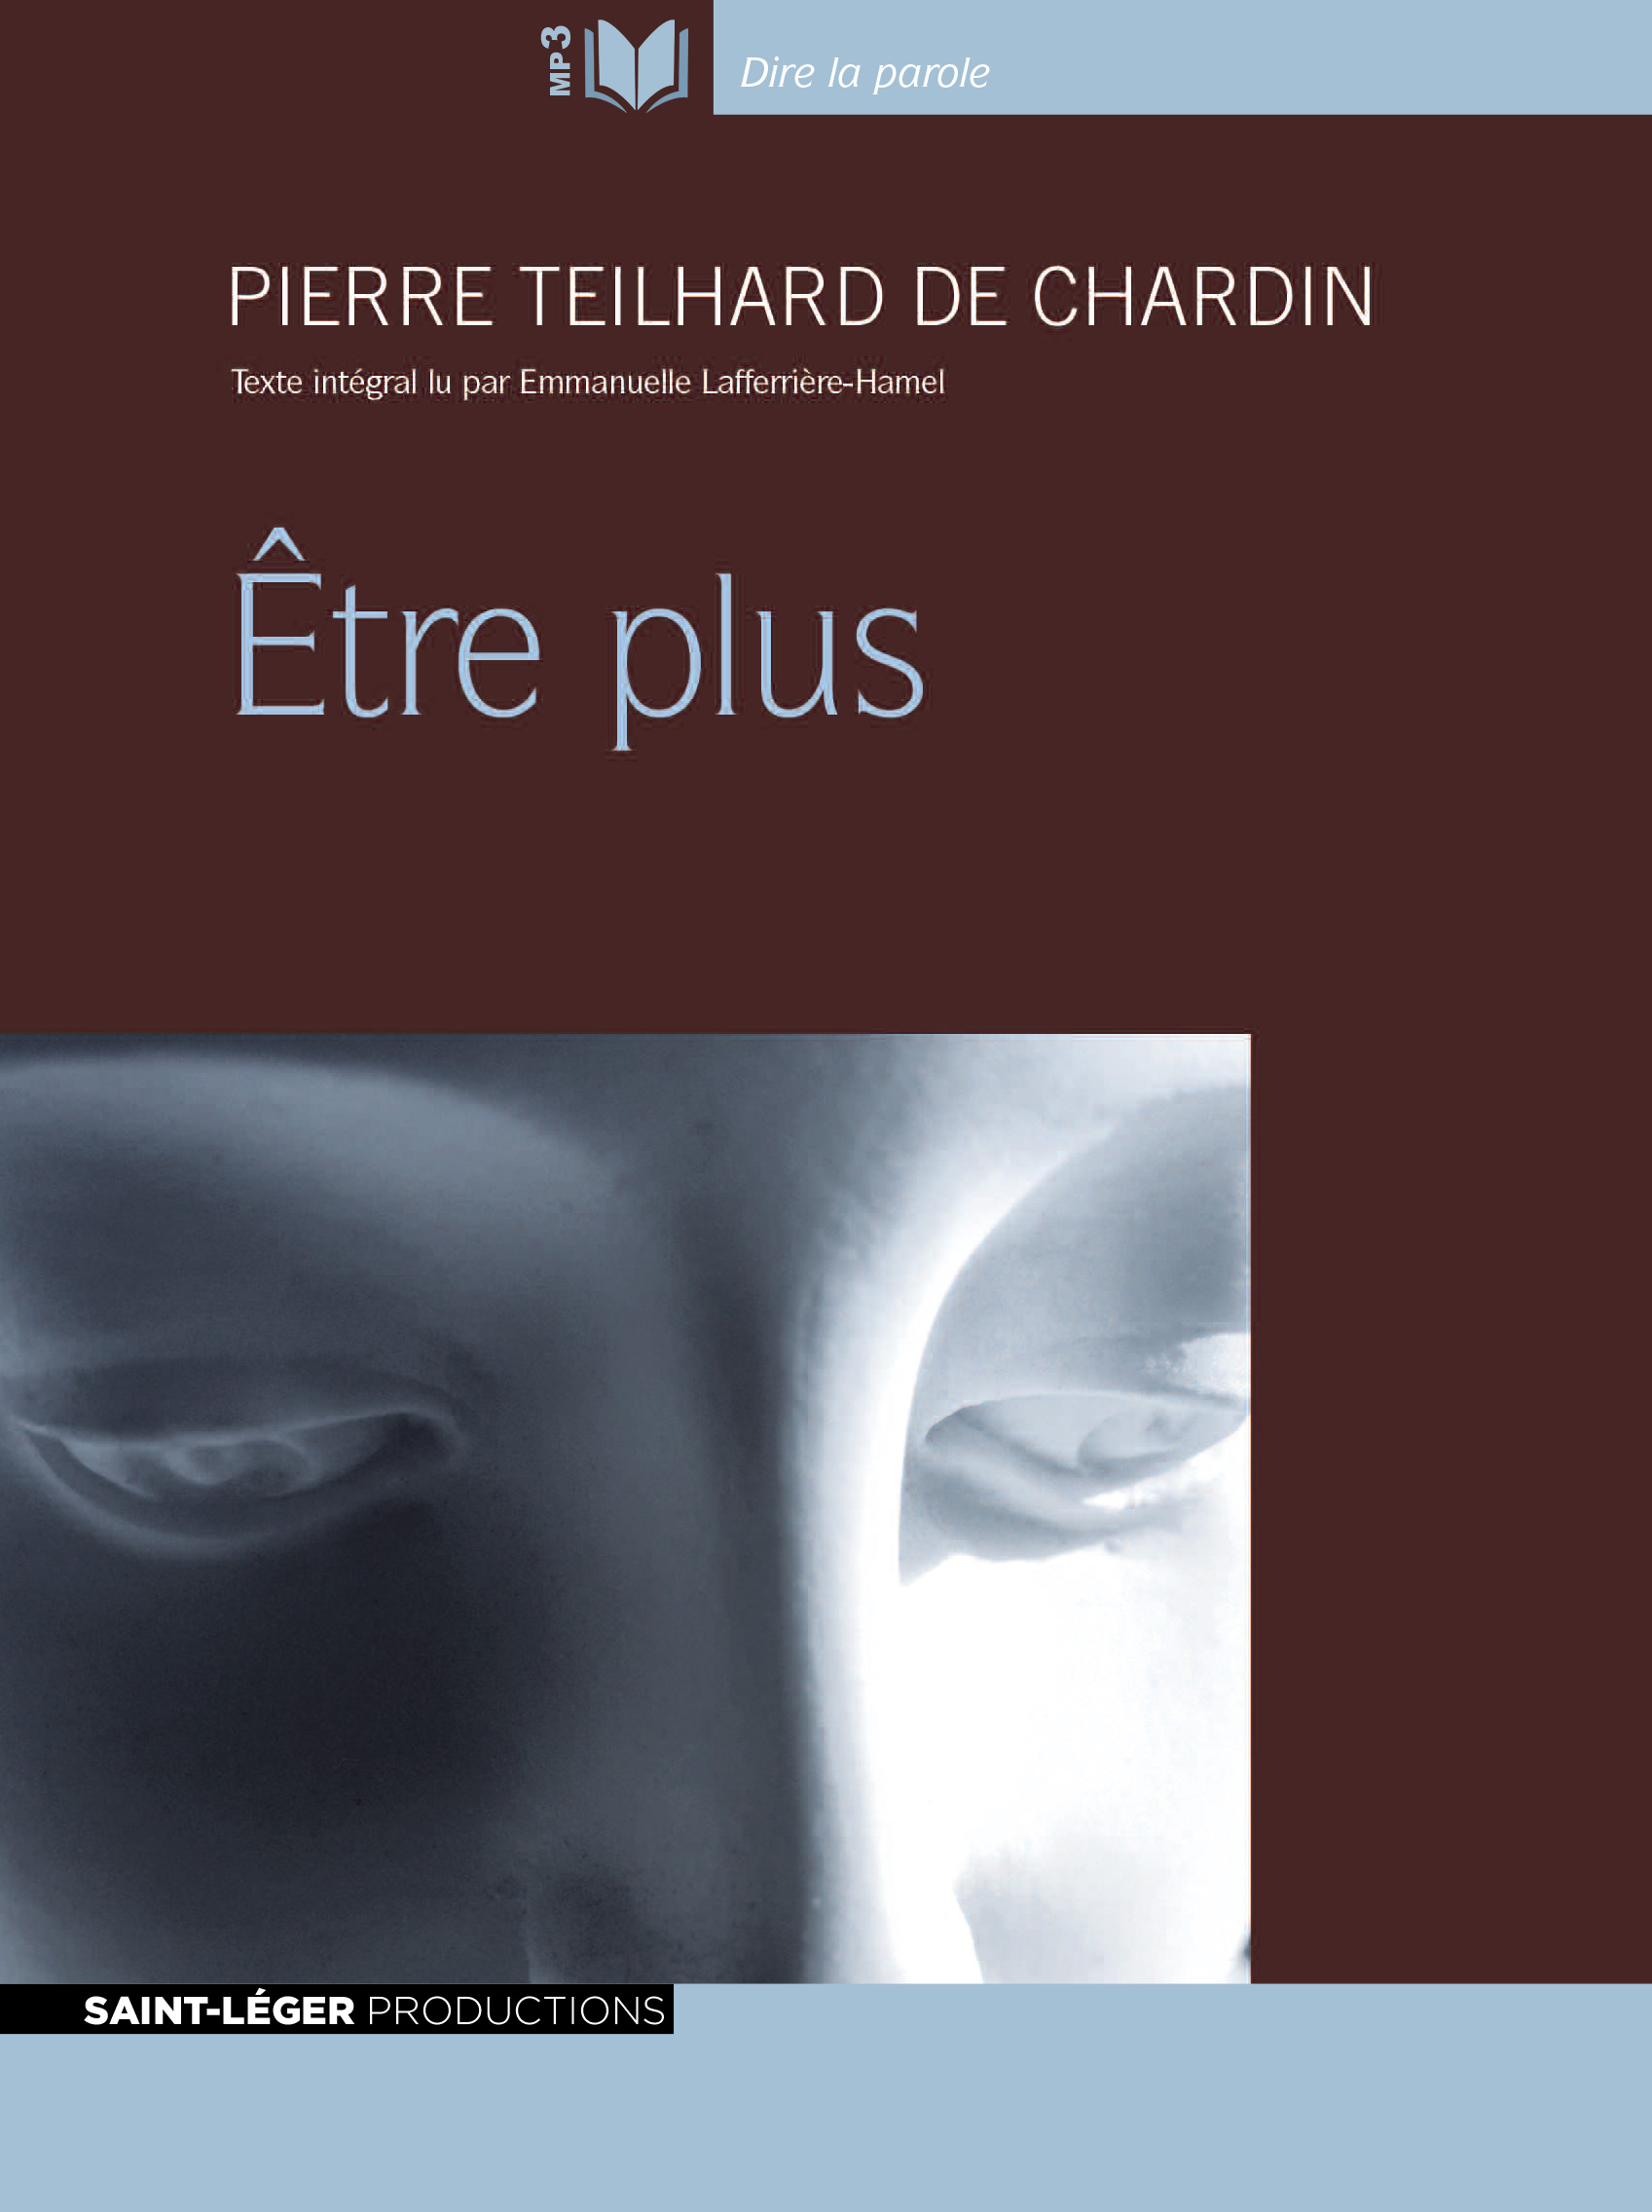 Teilhard de Chardin, tre plus, audiolivre